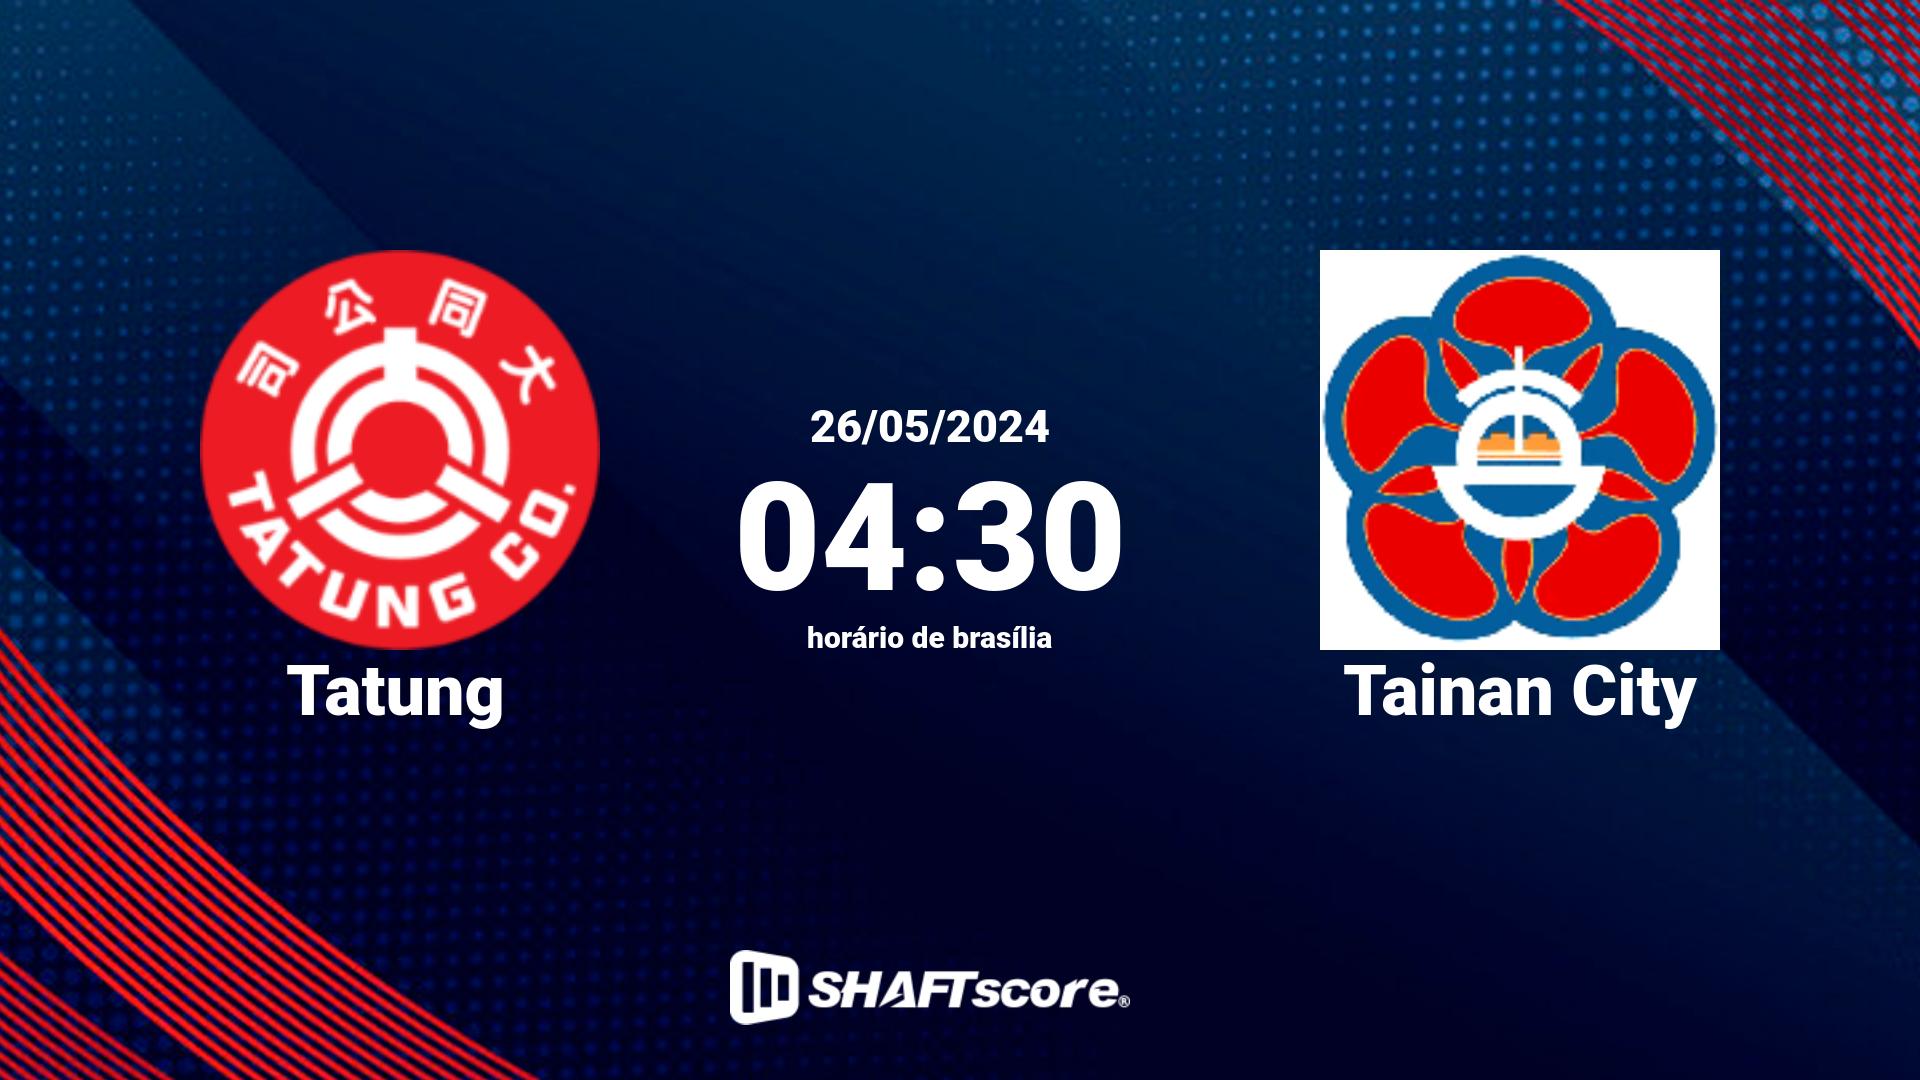 Estatísticas do jogo Tatung vs Tainan City 26.05 04:30